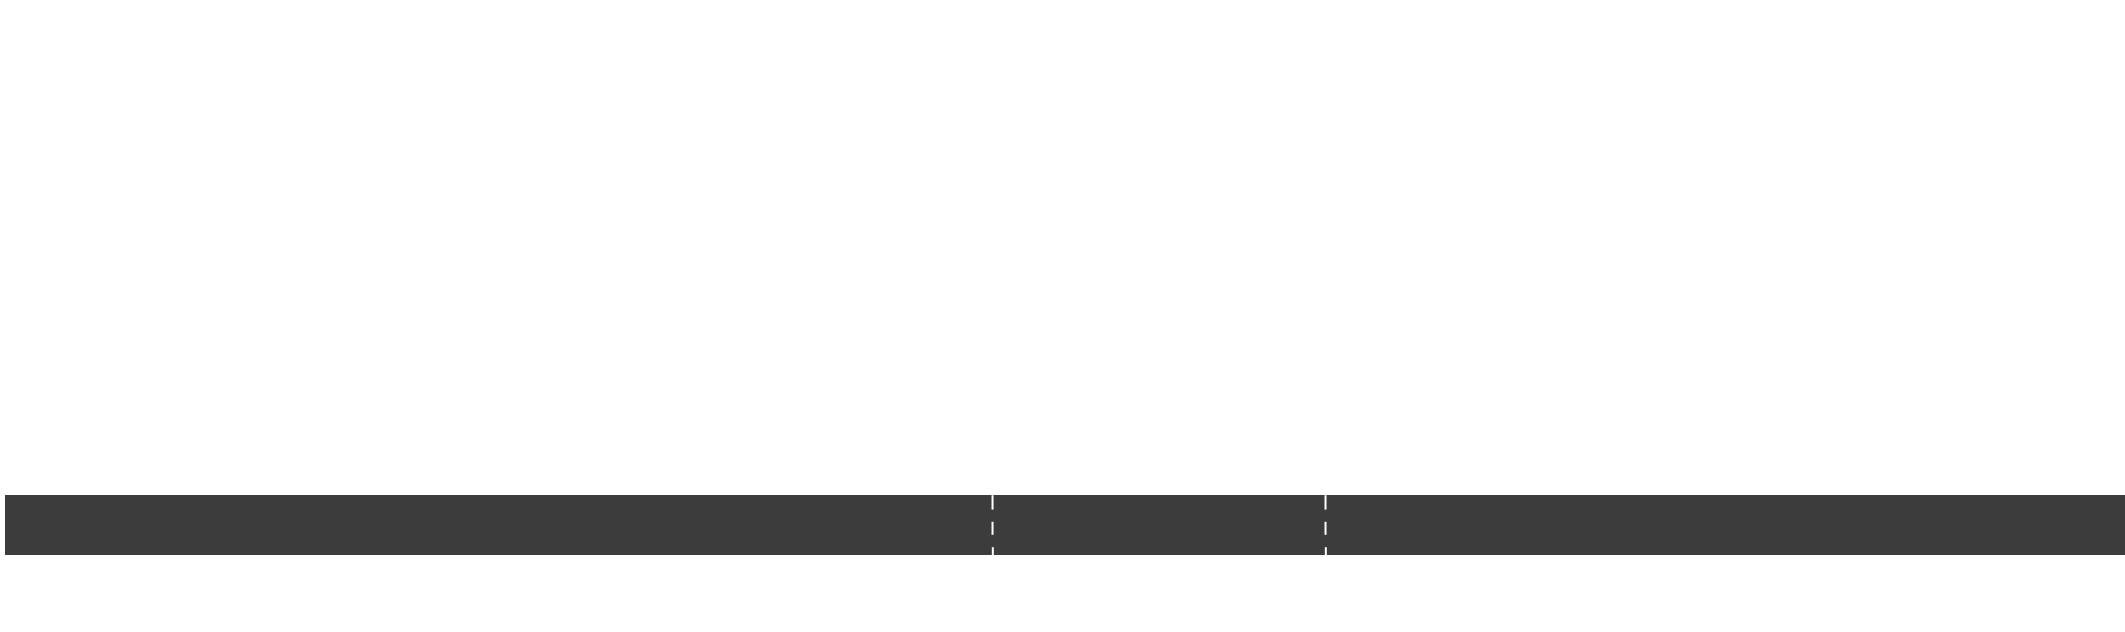 Horizontal Blinds Diagram PNG